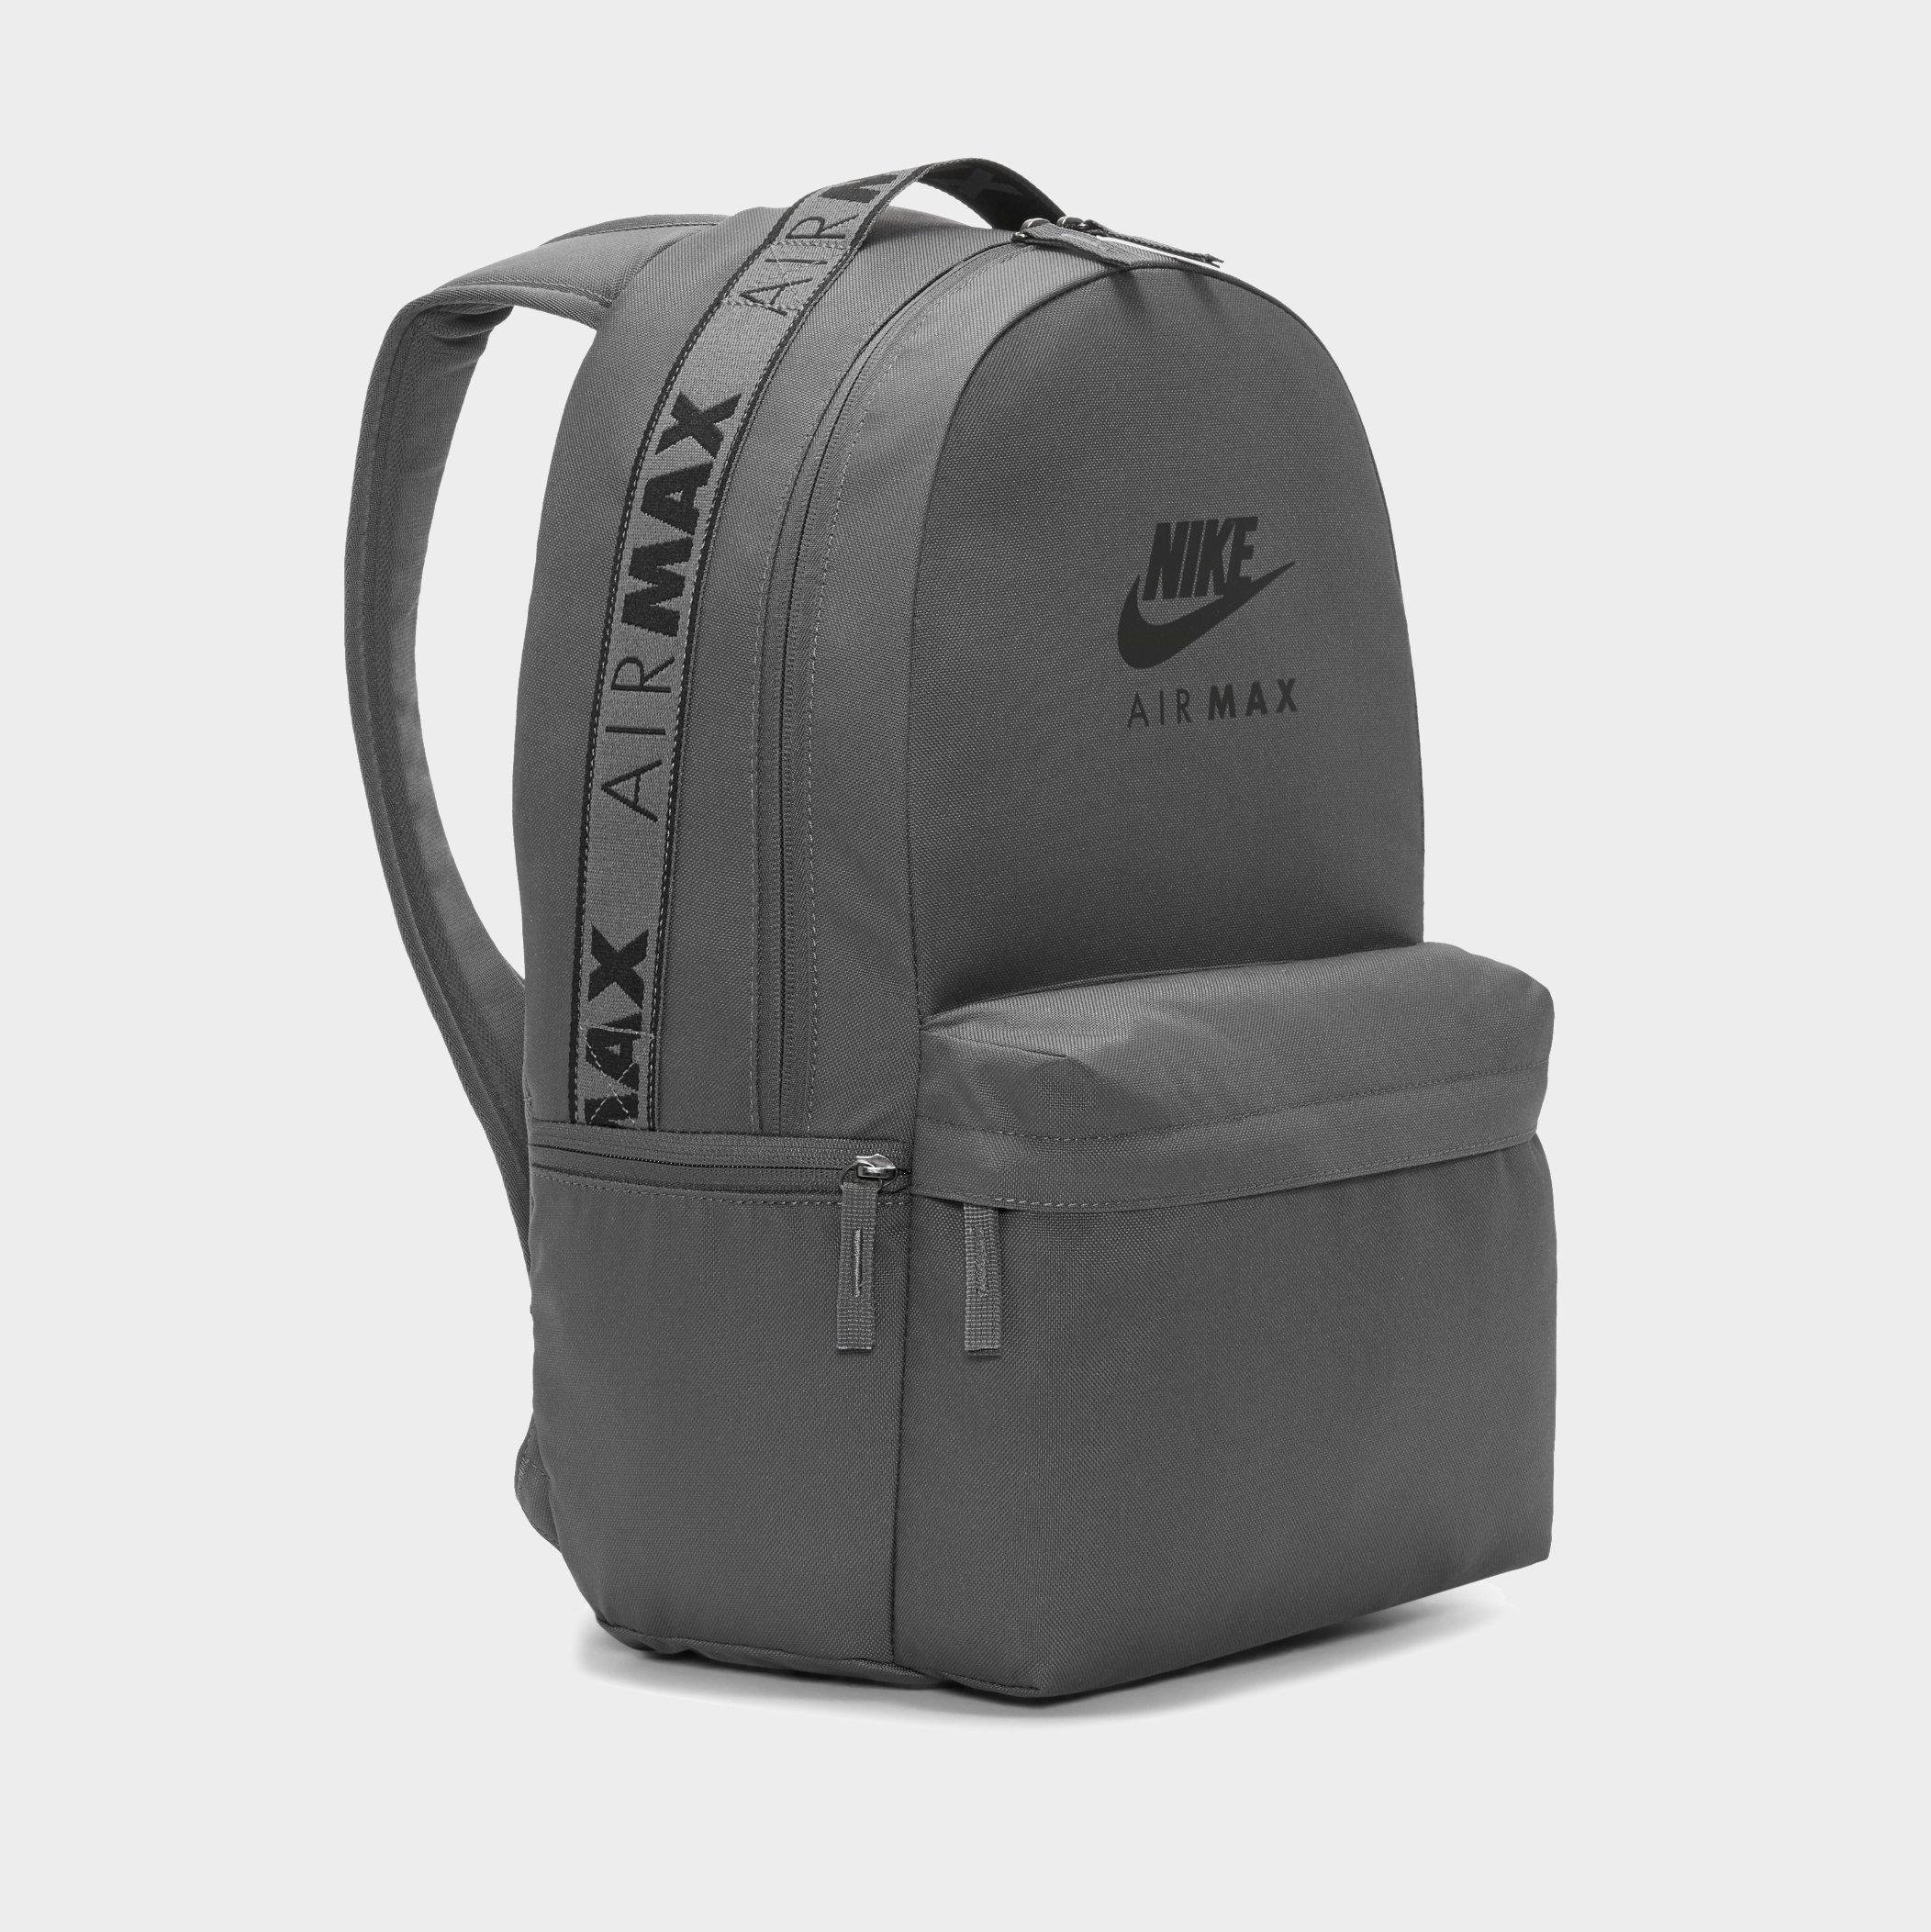 nike heritage air max backpack in black